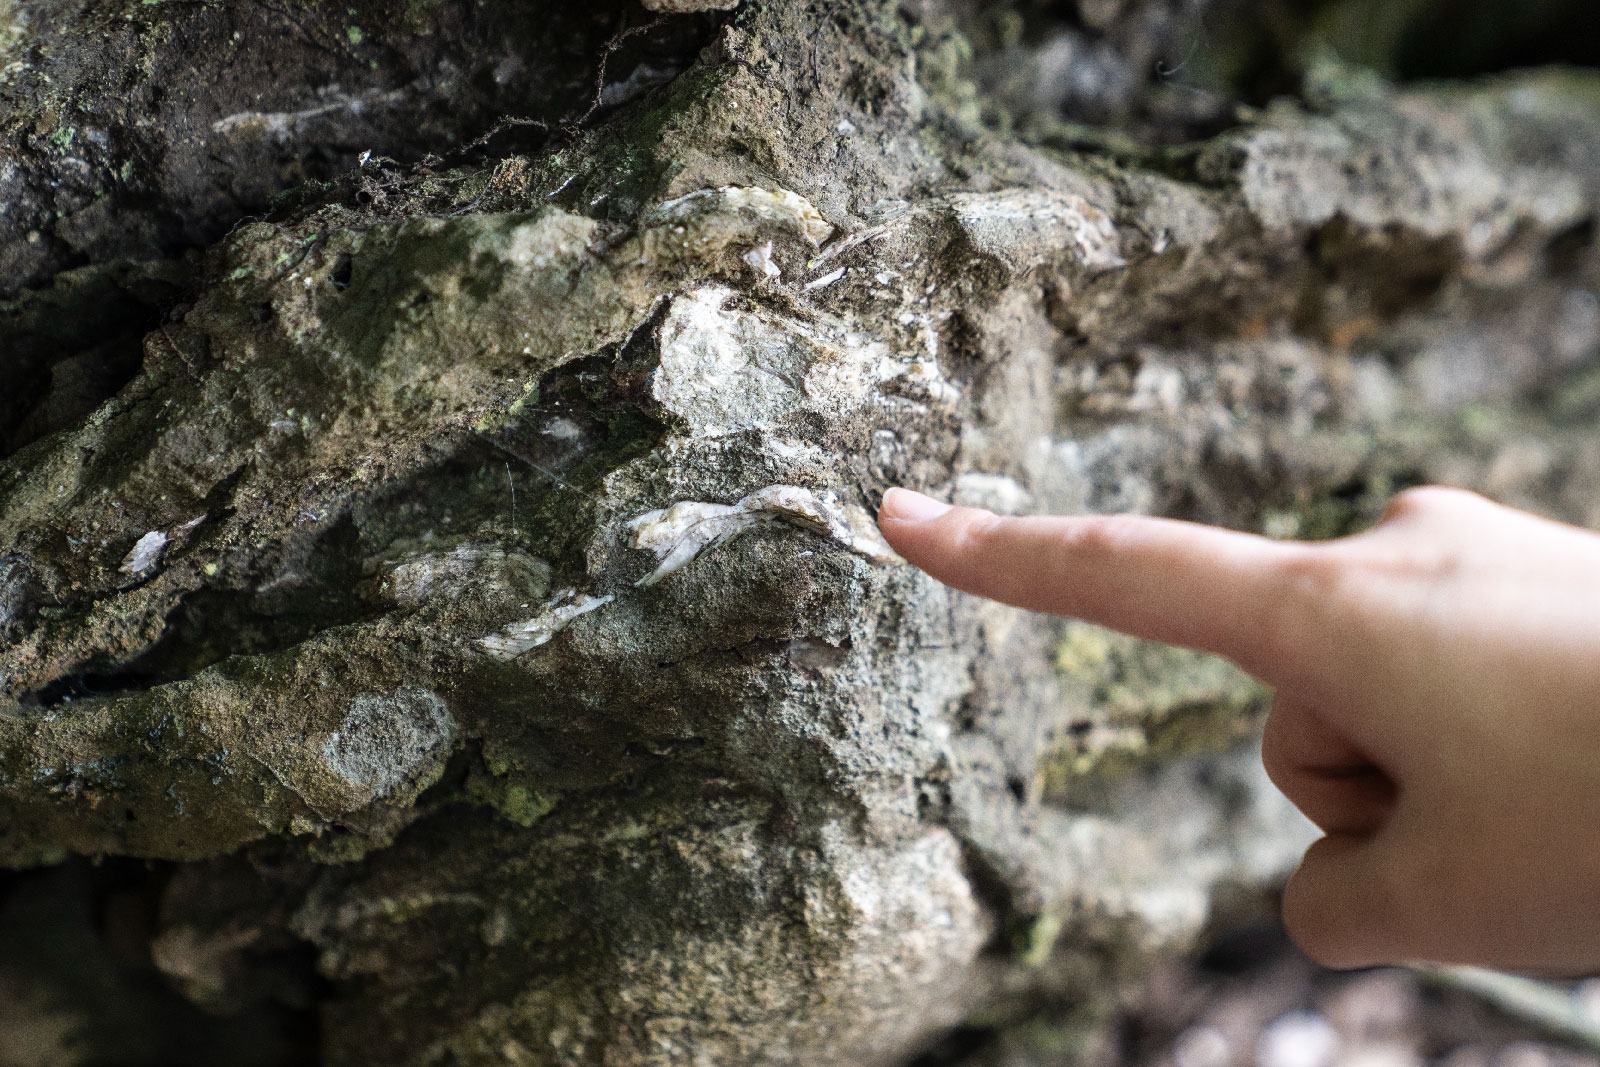 鳶山也具有美麗有趣的郊山生態，沿途探索植物之美，低下雙眼見看豐富生態，旅程將由甘樂文旅導覽帶領體驗時光回溯，探索從近代史到2千4百萬年前的地質與化石，認識世界級稀有的自然沉積石-三峽文石。並從特殊地形了解地質形成的過程。 | 甘樂文創 | 甘之如飴，樂在其中